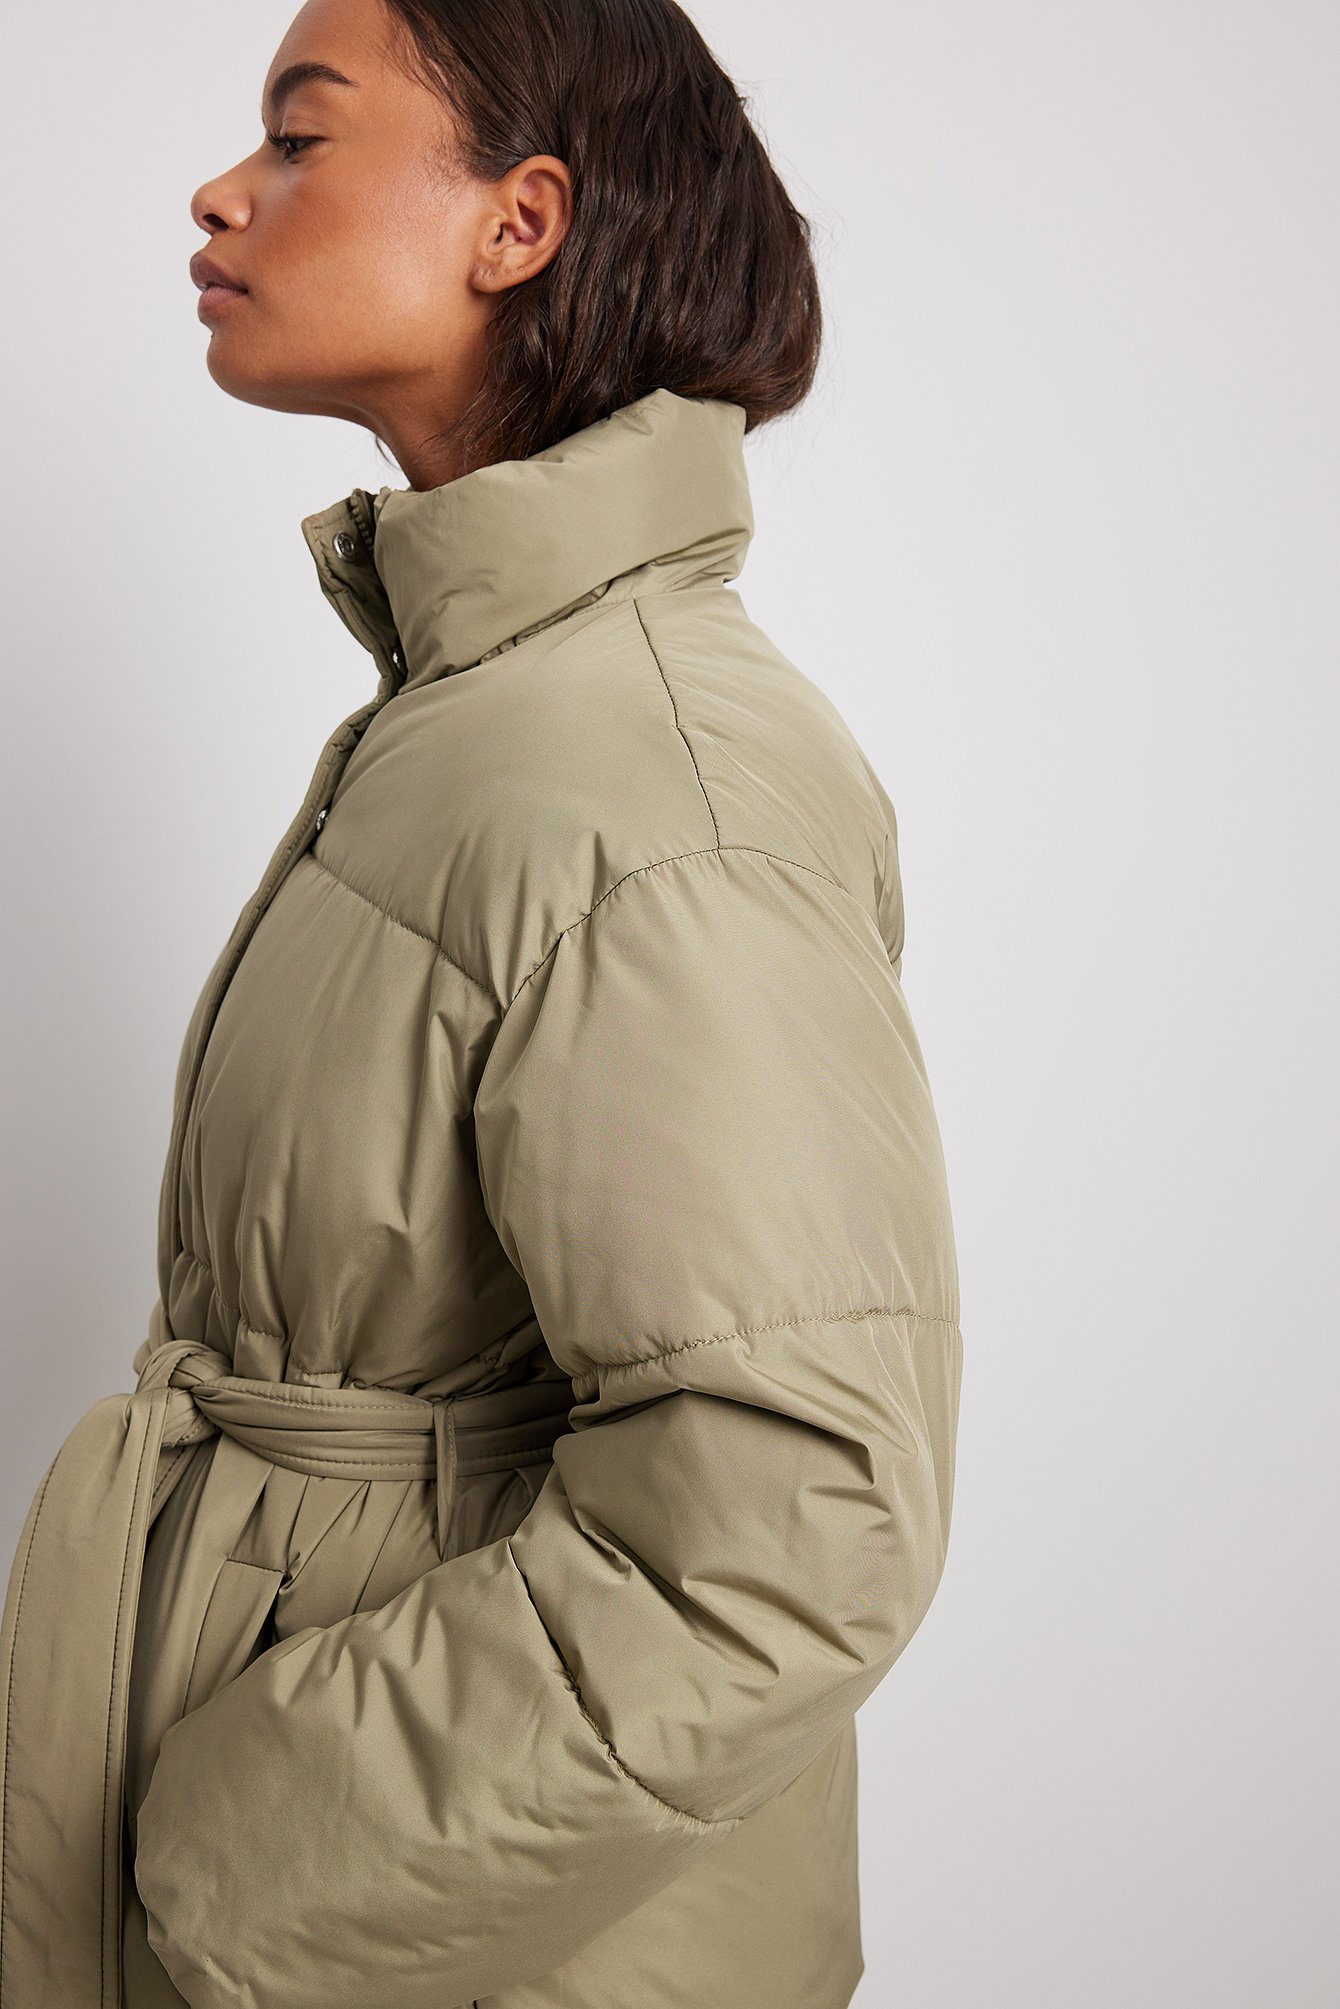 Object Gewatteerde jas volledige print casual uitstraling Mode Jassen Gewatteerde jassen 